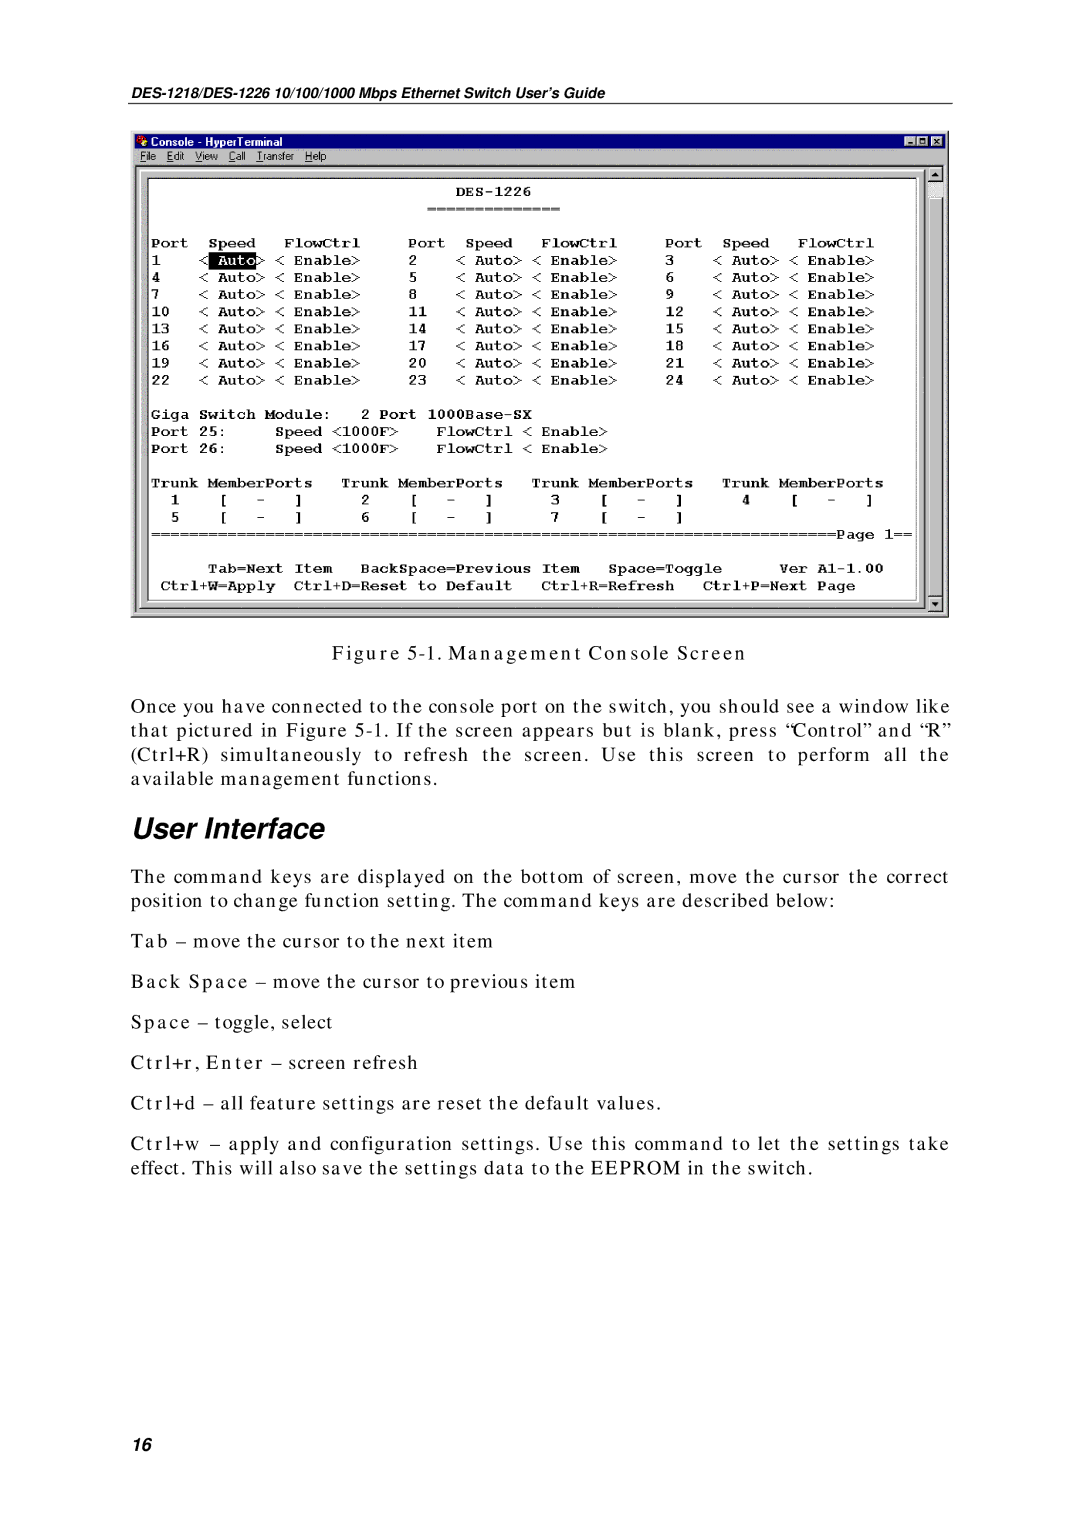 D-Link DES-1218, DES1226 manual User Interface, Management Console Screen 